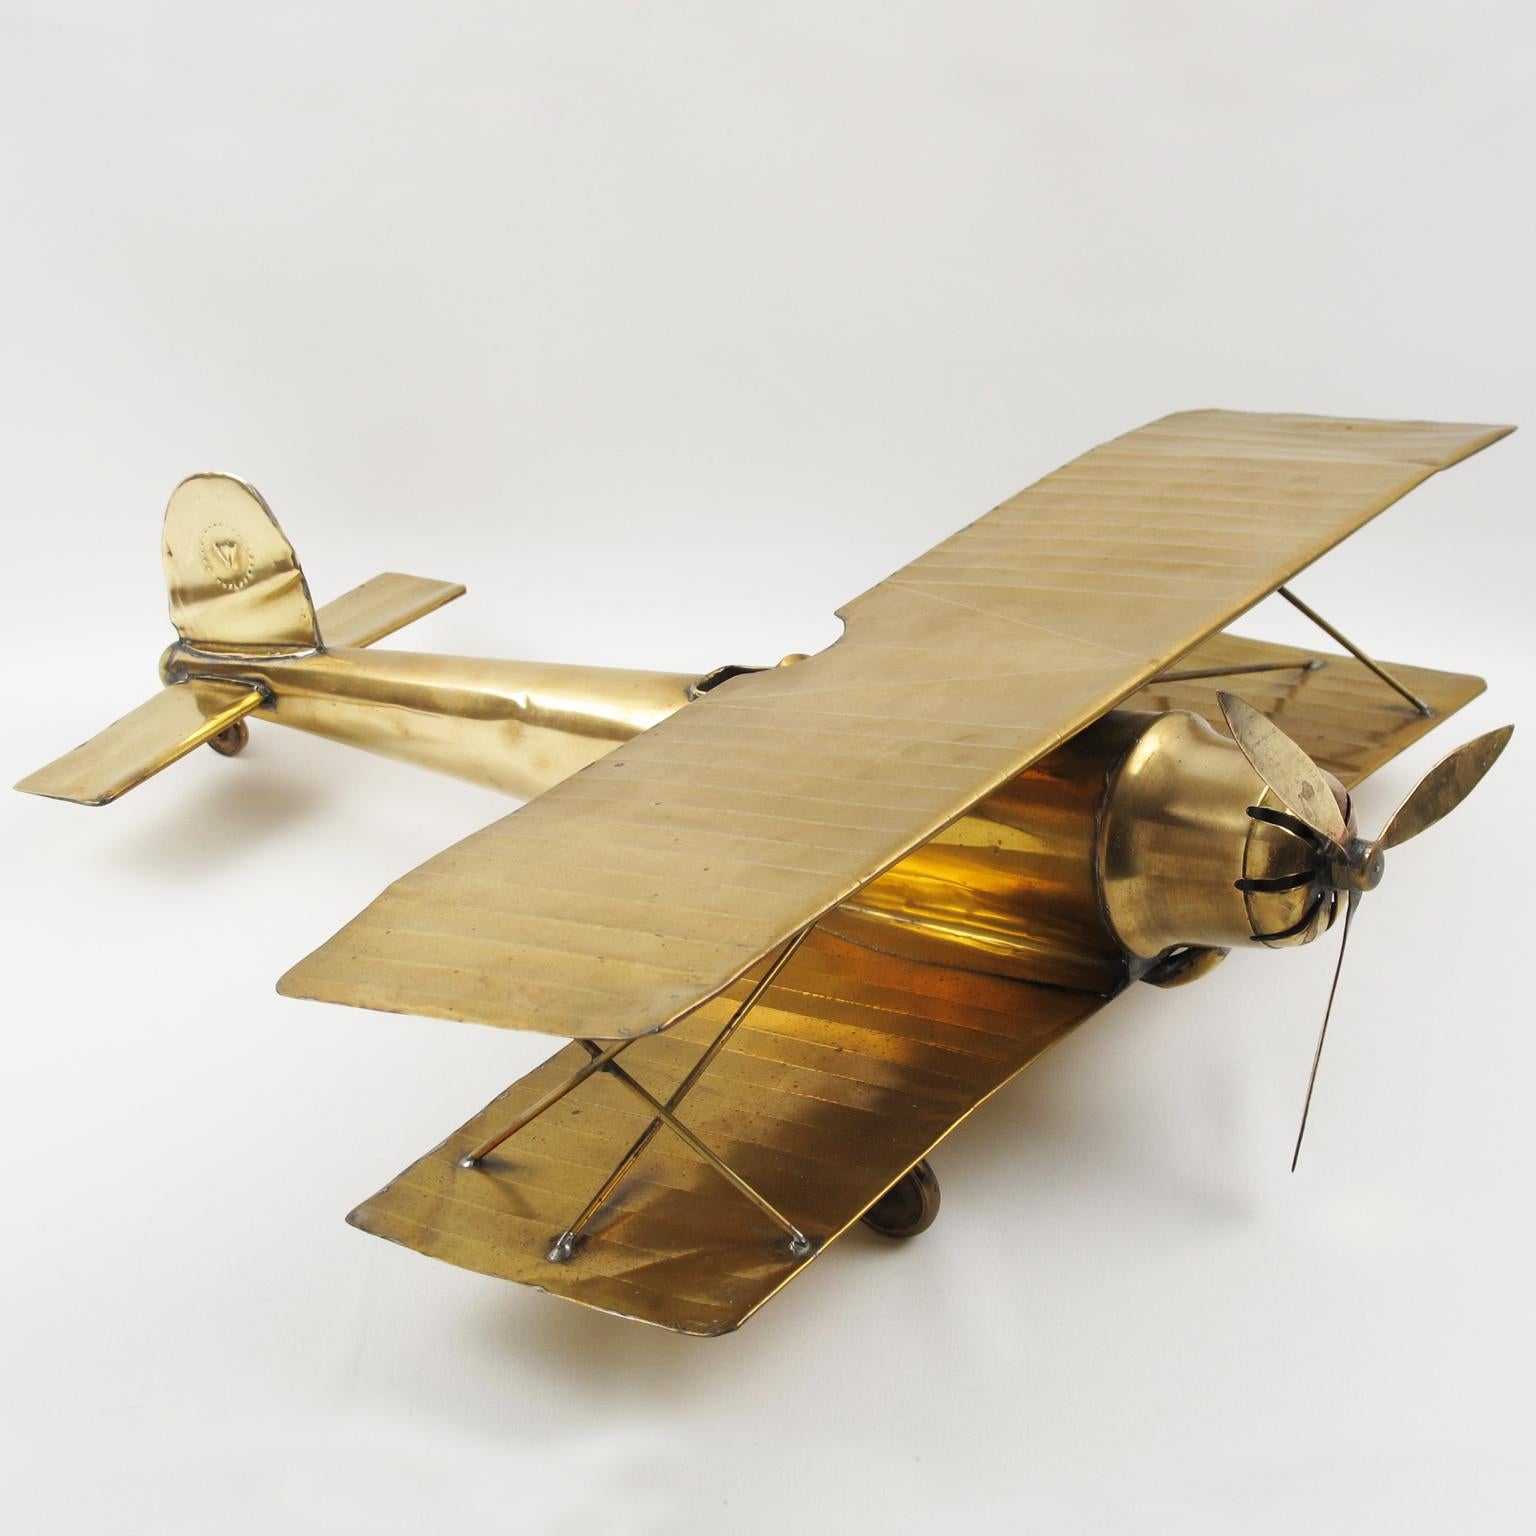 Ce superbe avion biplan en laiton de l'époque de la Première Guerre mondiale a été fabriqué à la main dans les années 1950. Il s'agit d'une maquette d'avion à grande échelle avec des détails complexes. Elle est superbement suspendue au plafond ou